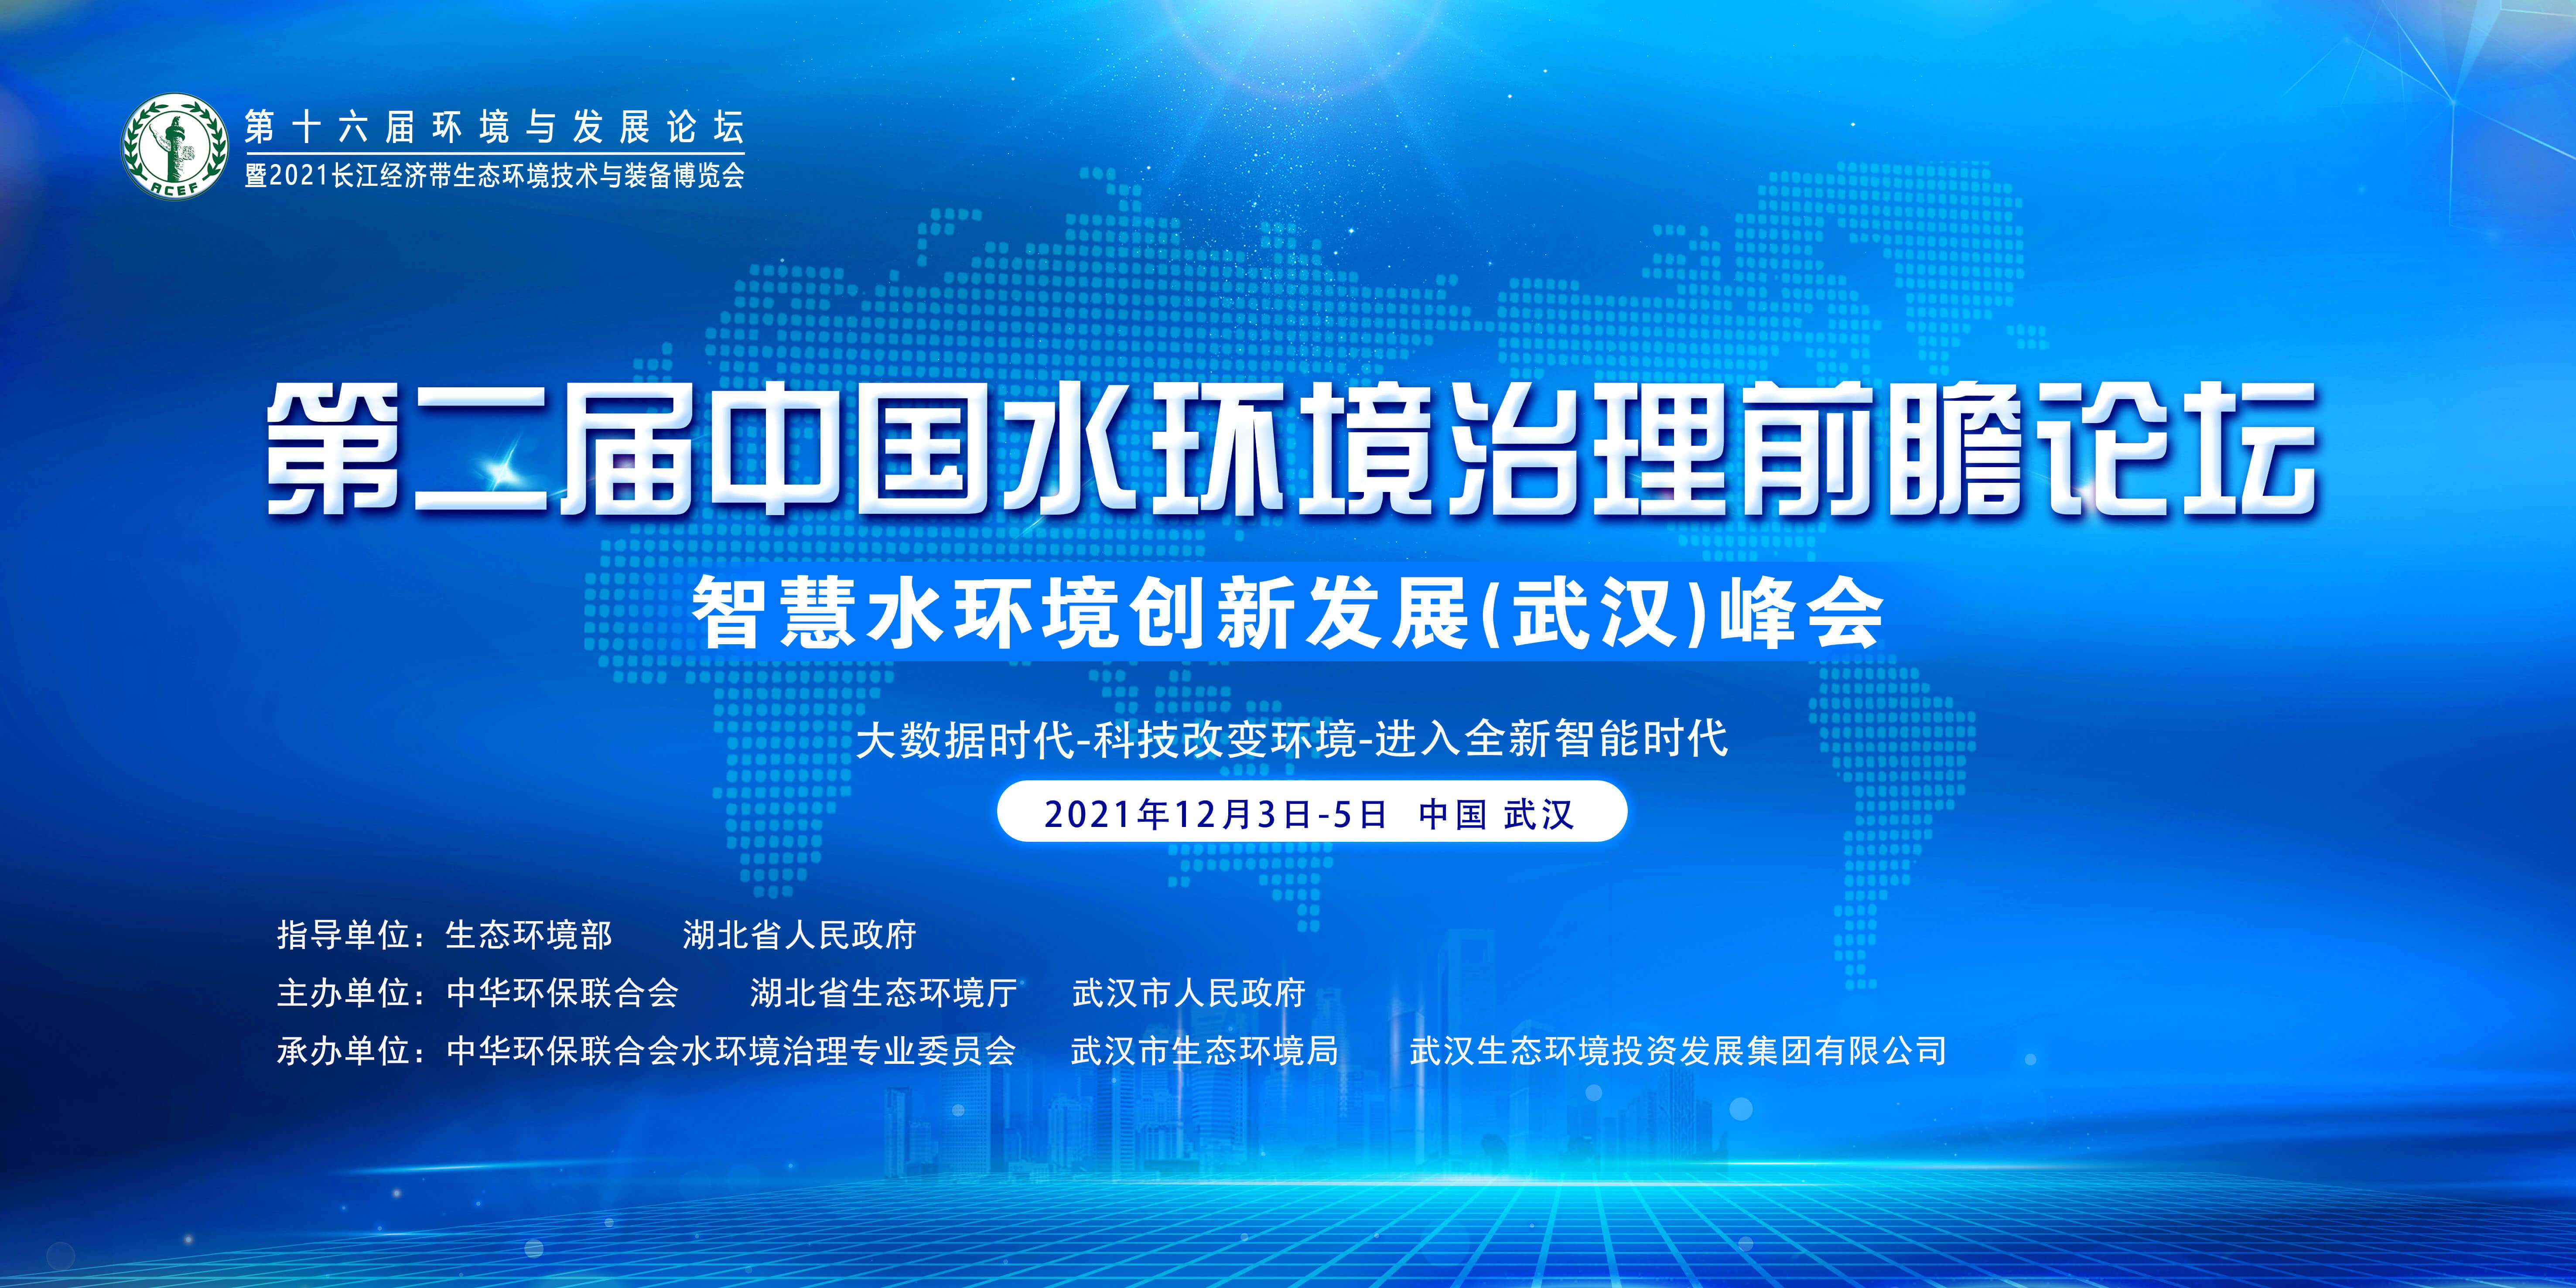 第十六屆環境與發展論壇暨第二屆中國水環境治理前瞻論壇智慧水環境創新發展（武漢）峰會